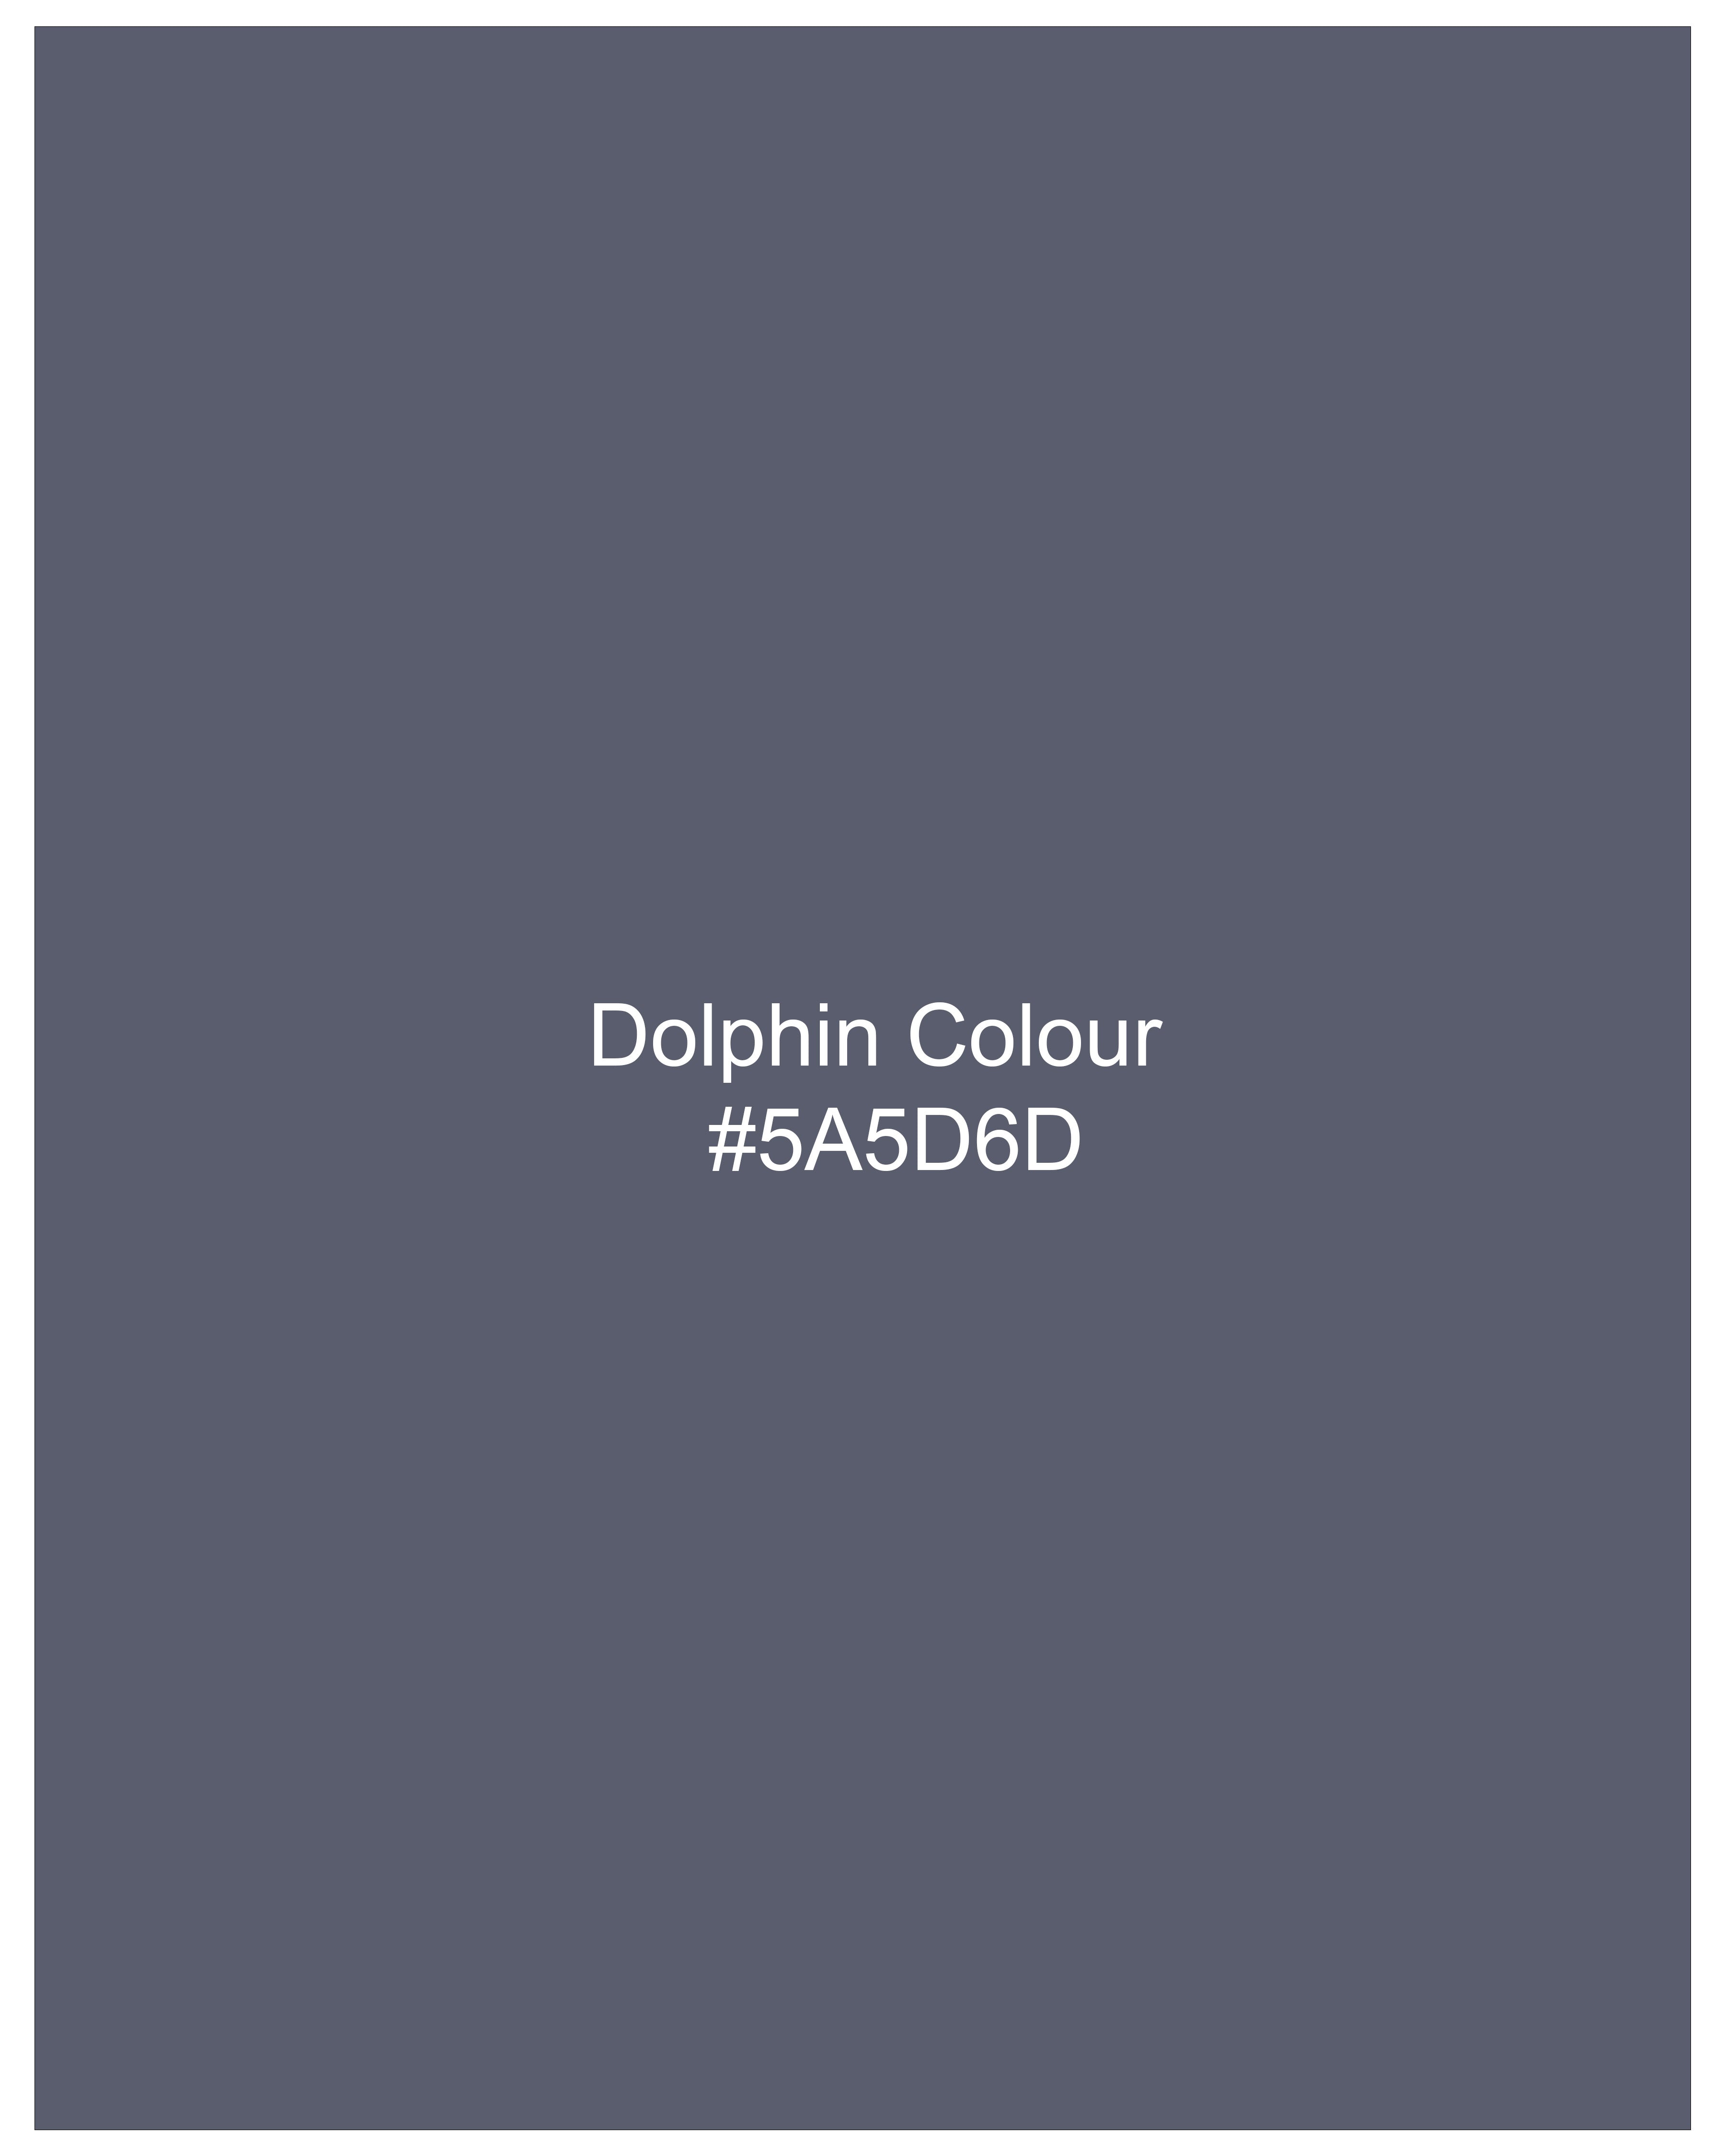 Dolphin Gray Clean Look Rinse Wash Denim J208-30, J208-32, J208-34, J208-36, J208-38, J208-40 